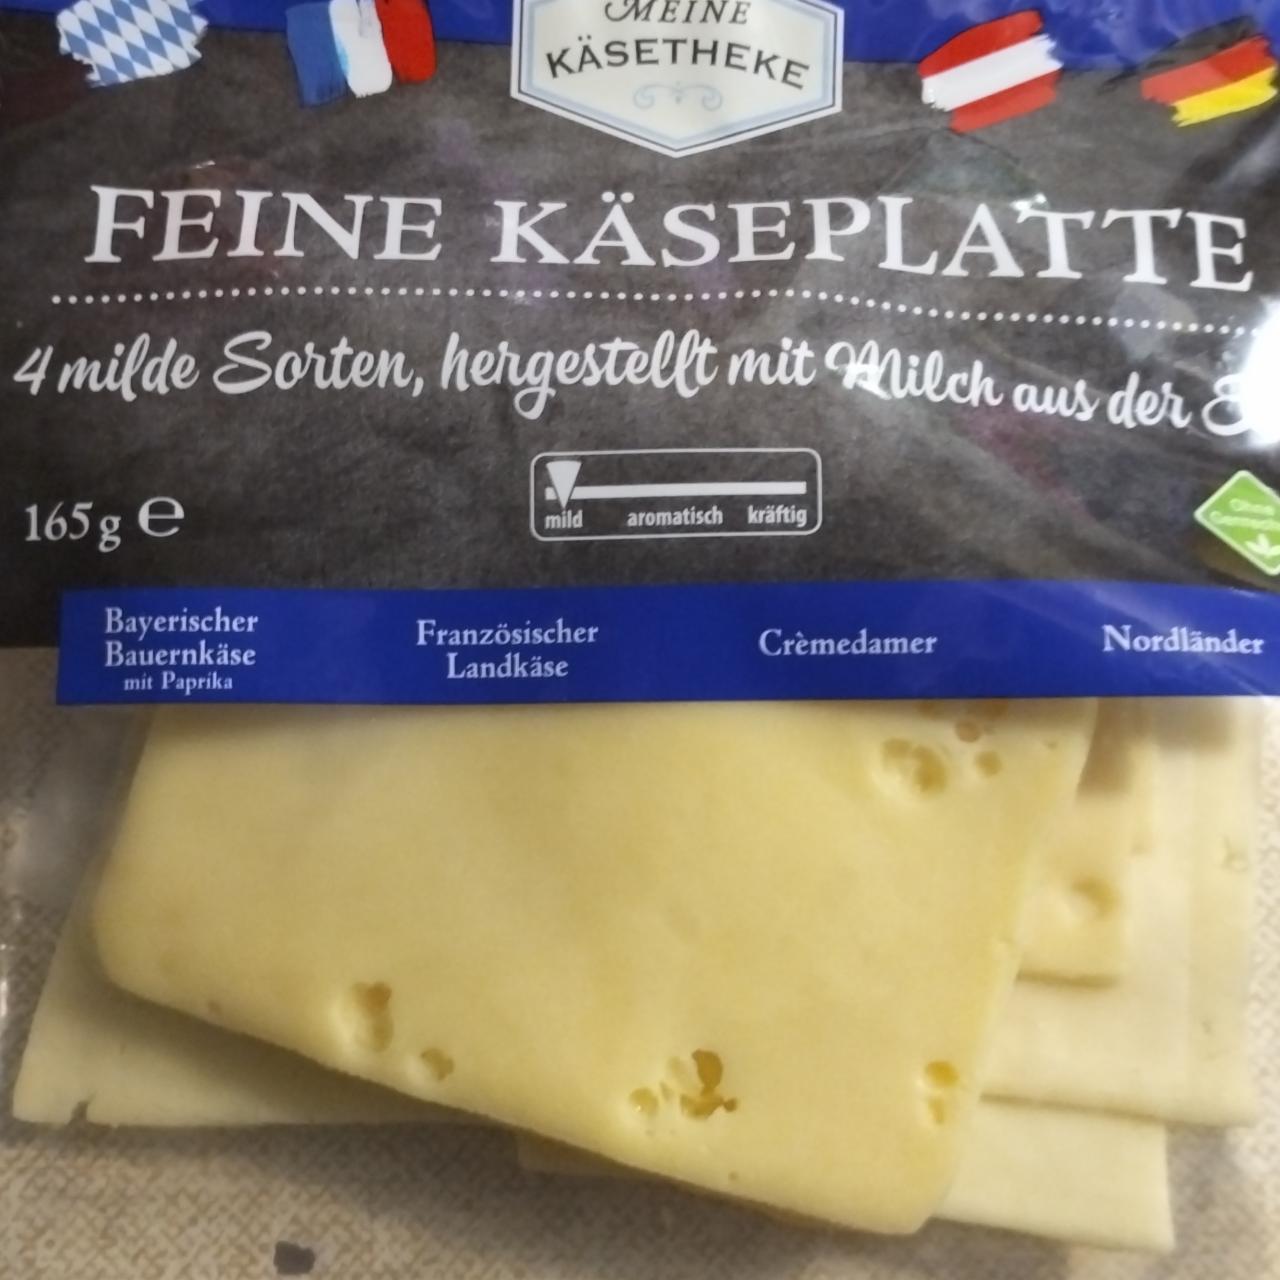 Fotografie - Feine Käseplatte 4 milden Sorten Meine Käsetheke